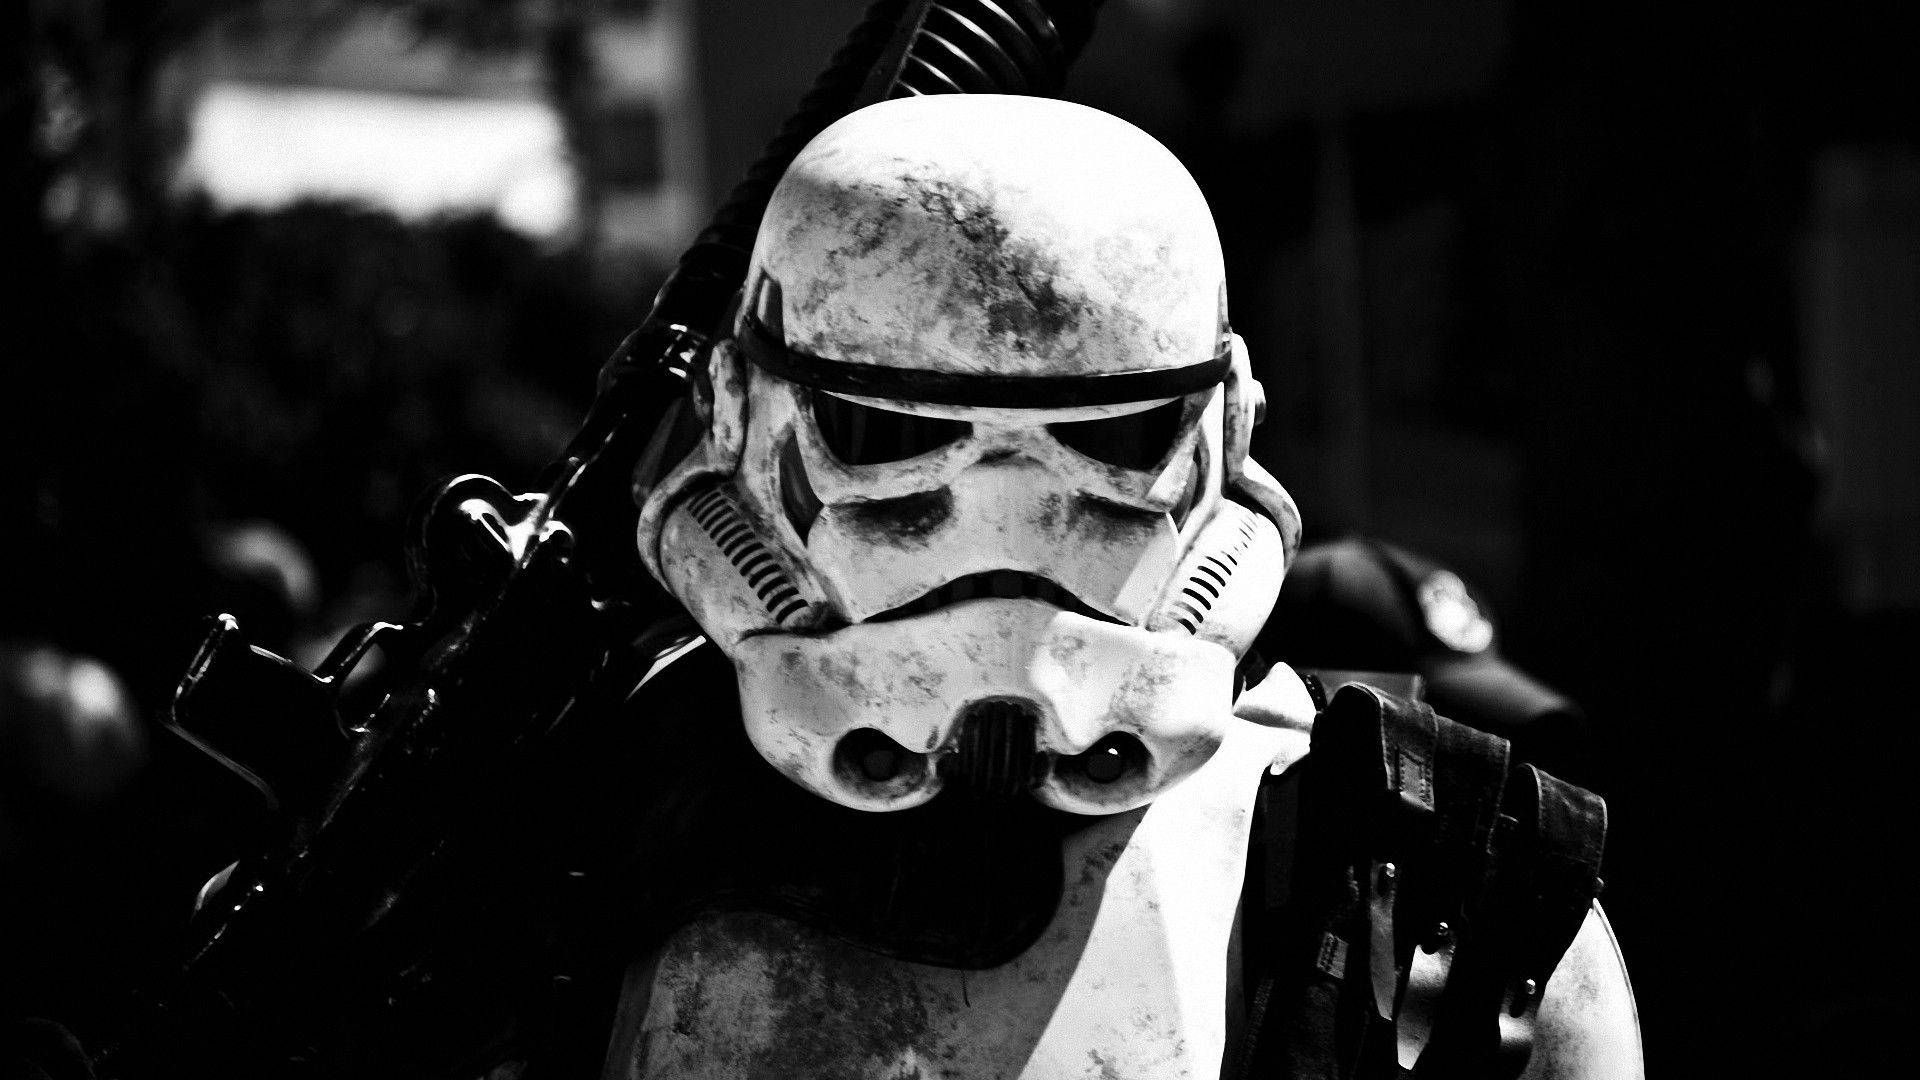 Star Wars Stormtrooper Background